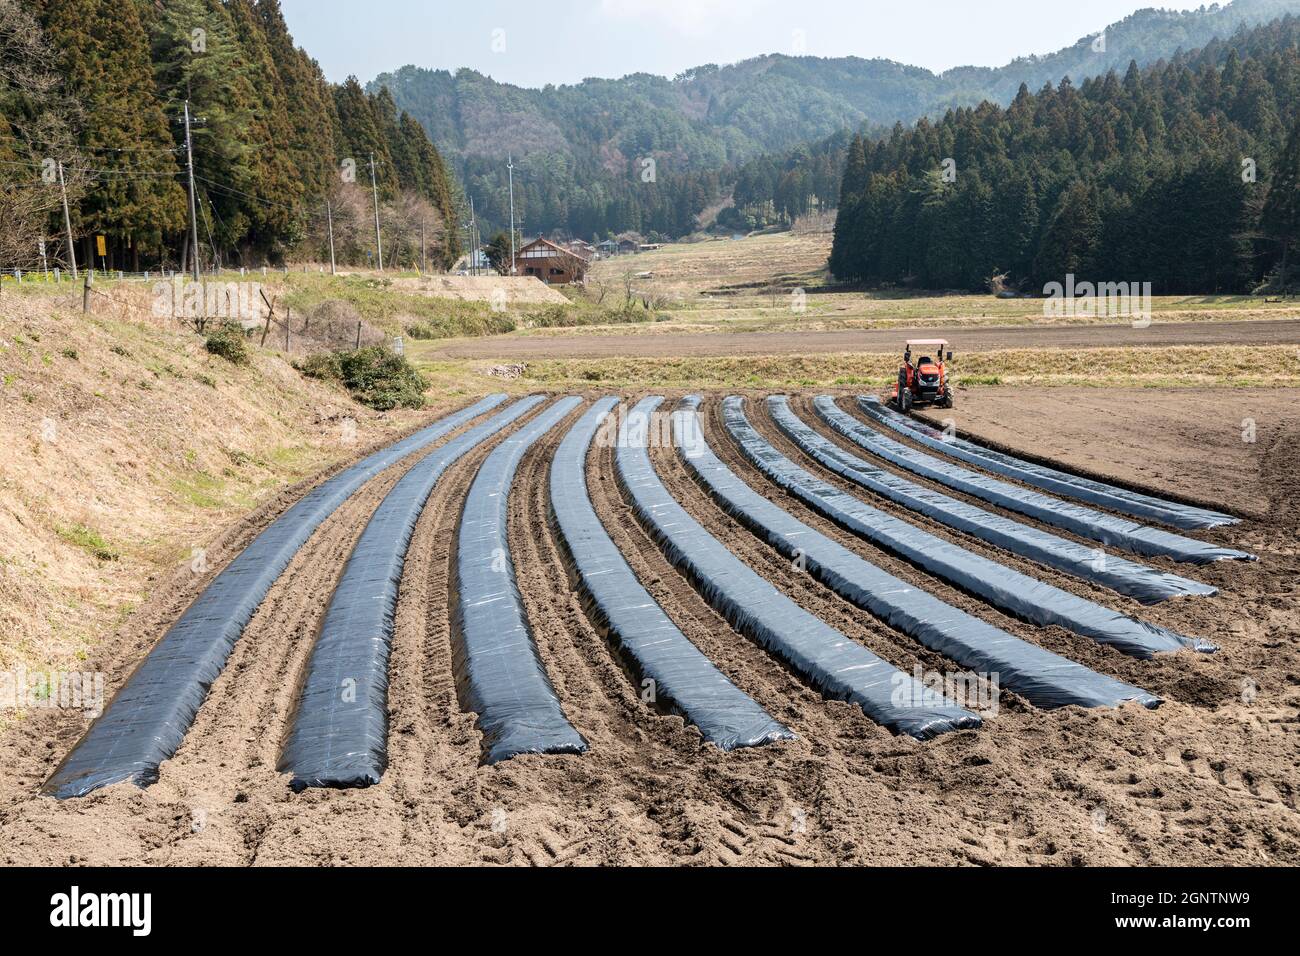 Anbau von Pflanzen unter Polyethylen, um das Wachstum zu beschleunigen, Präfektur Yamaguchi, Japan Stockfoto